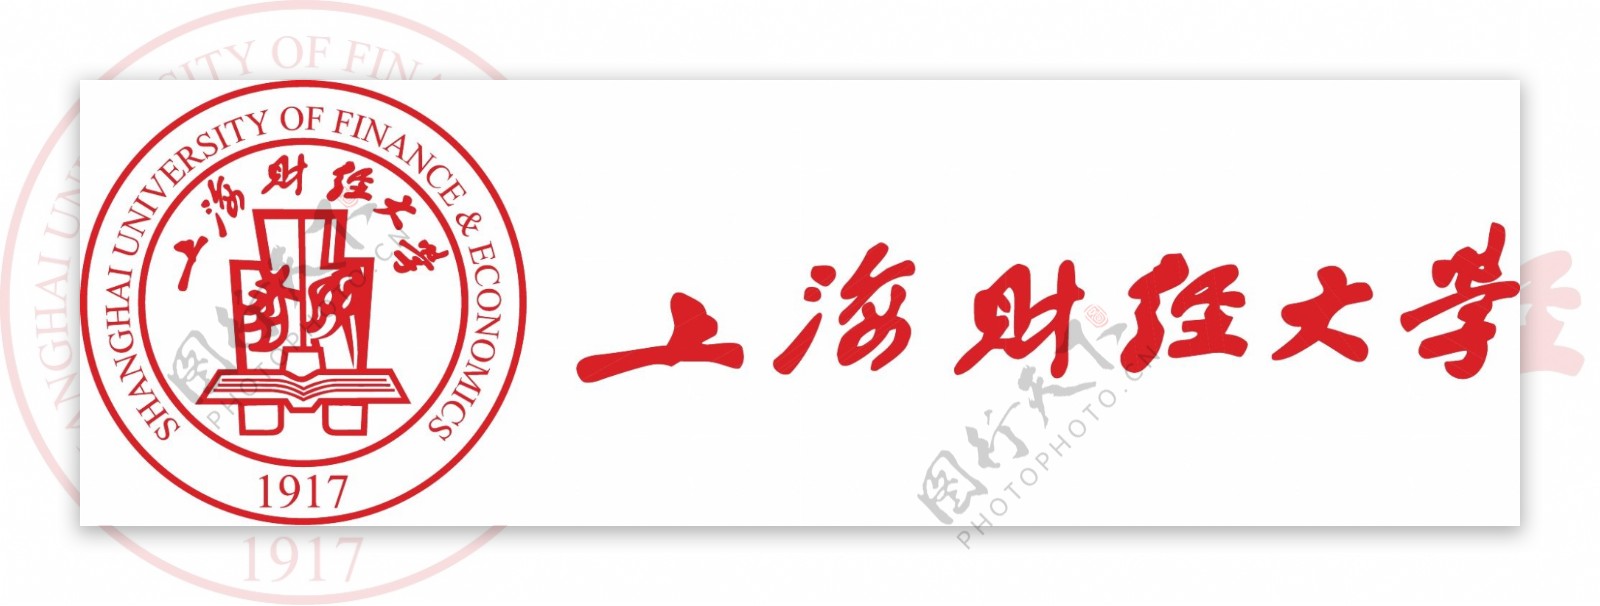 上海财经大学logo图片